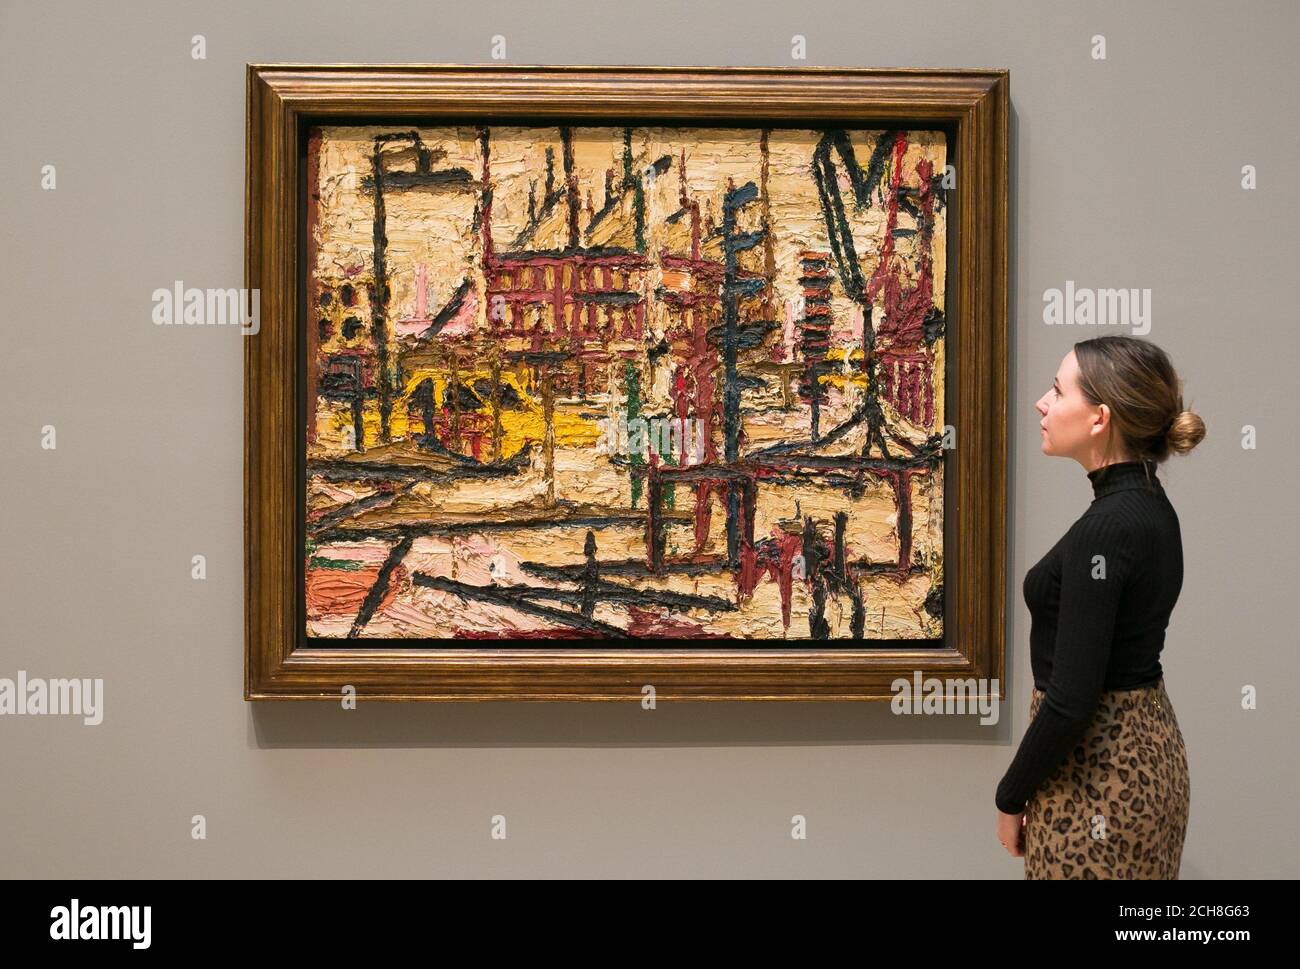 Un employé de la galerie regarde un tableau de Frank Auerbach appelé 'Mornington Crescent', 1965, lors d'une photo pour une nouvelle exposition de l'artiste britannique au Tate Britain à Londres. Banque D'Images